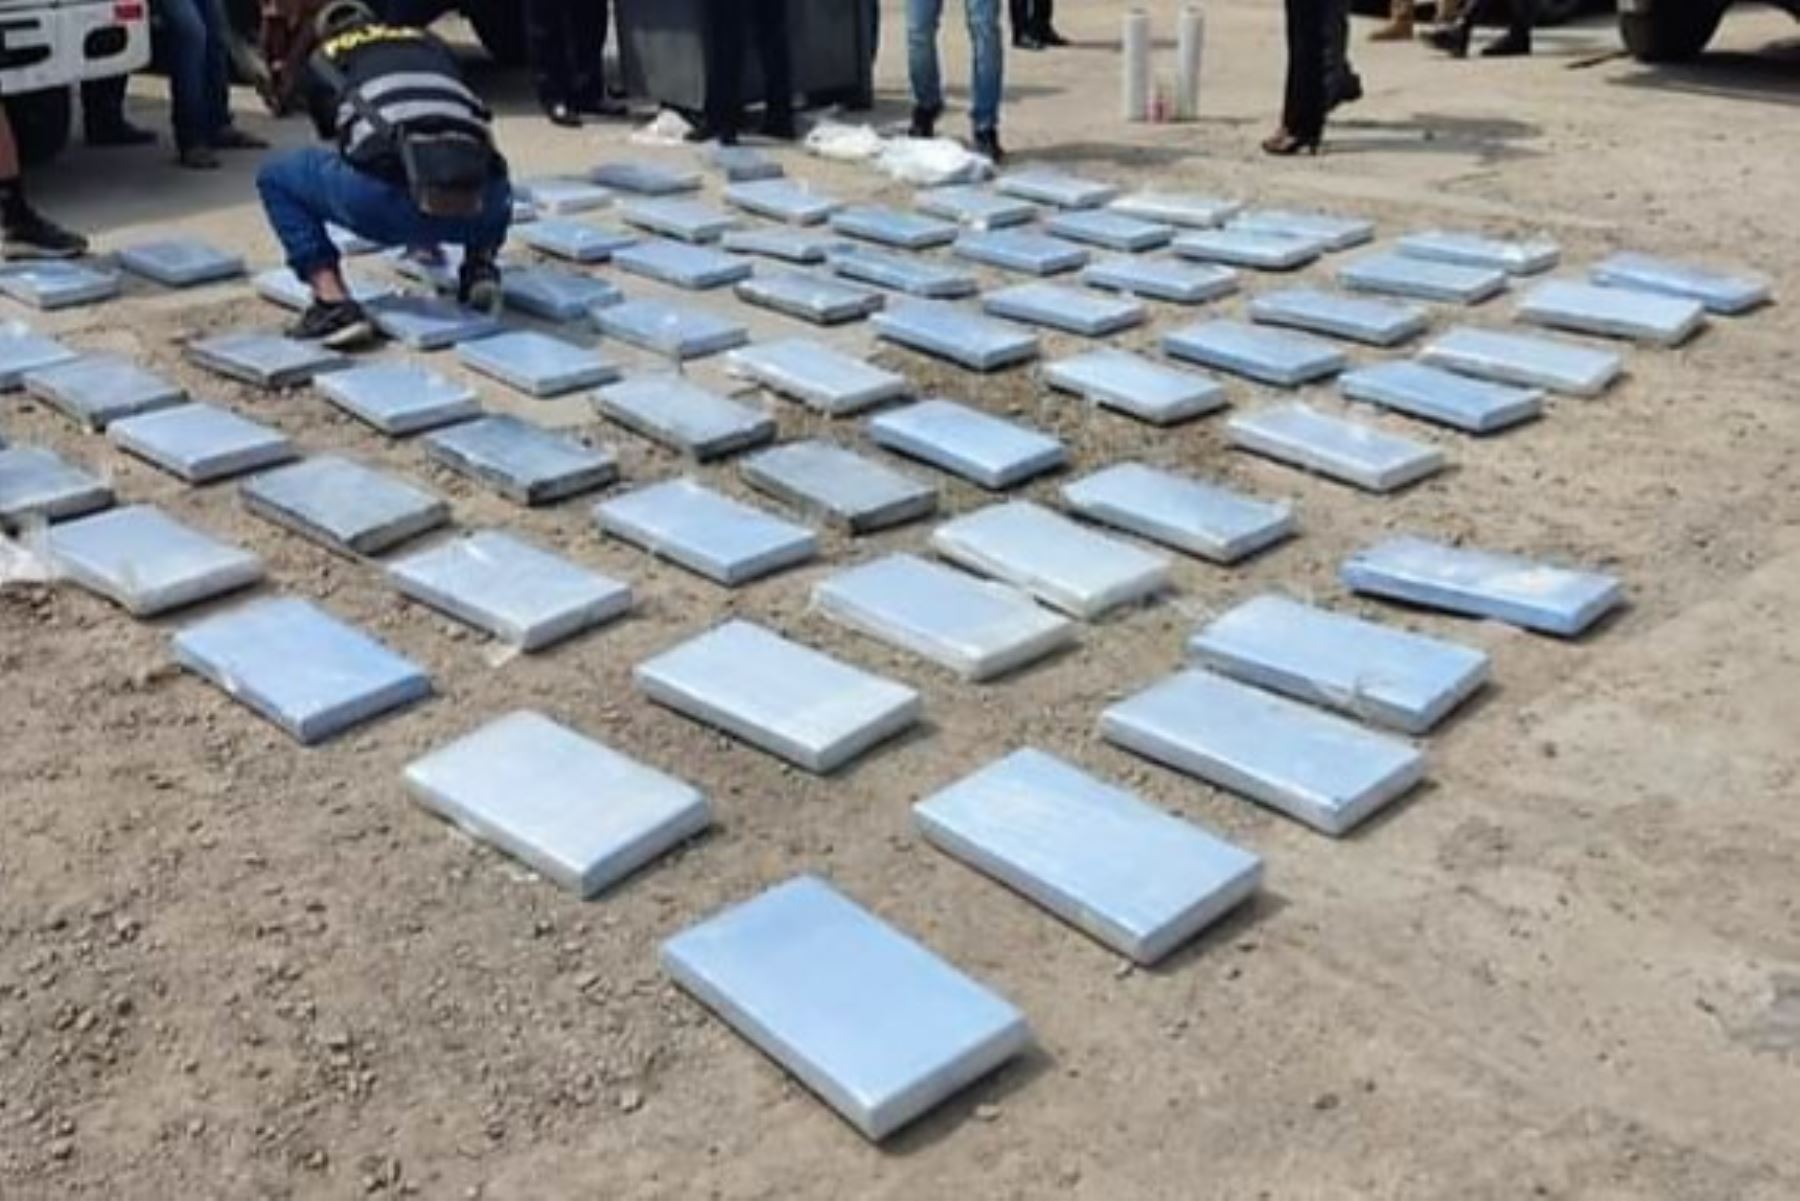 Intervención policial permitió la incautación de 320 kilos de droga en Lambayeque. Foto: ANDINA/Difusión